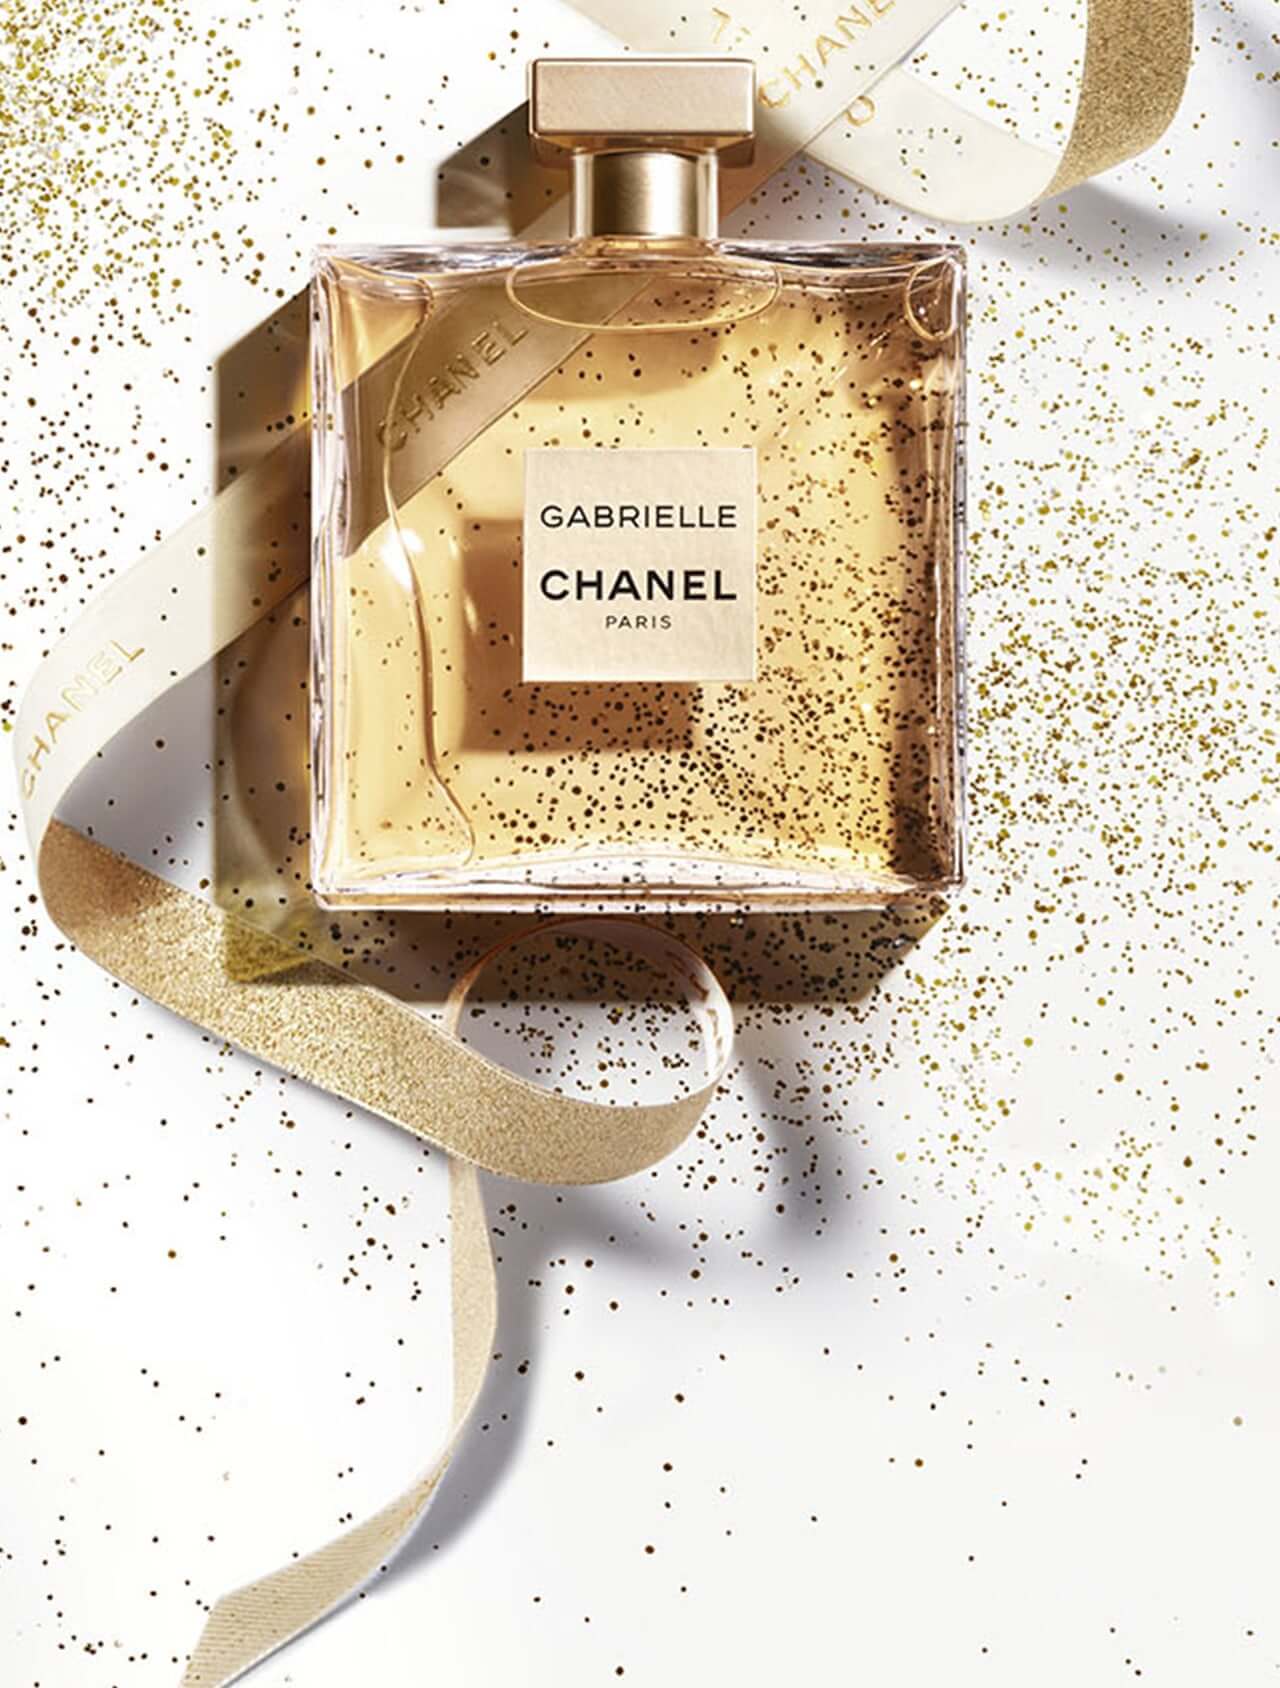 Chanel Gabrielle EDP , Chanel Gabrielle EDP รีวิว , Chanel Gabrielle EDP review , Chanel Gabrielle EDP ราคา , Chanel Gabrielle EDP tester size , Chanel Gabrielle EDP หอมมั้ย ,